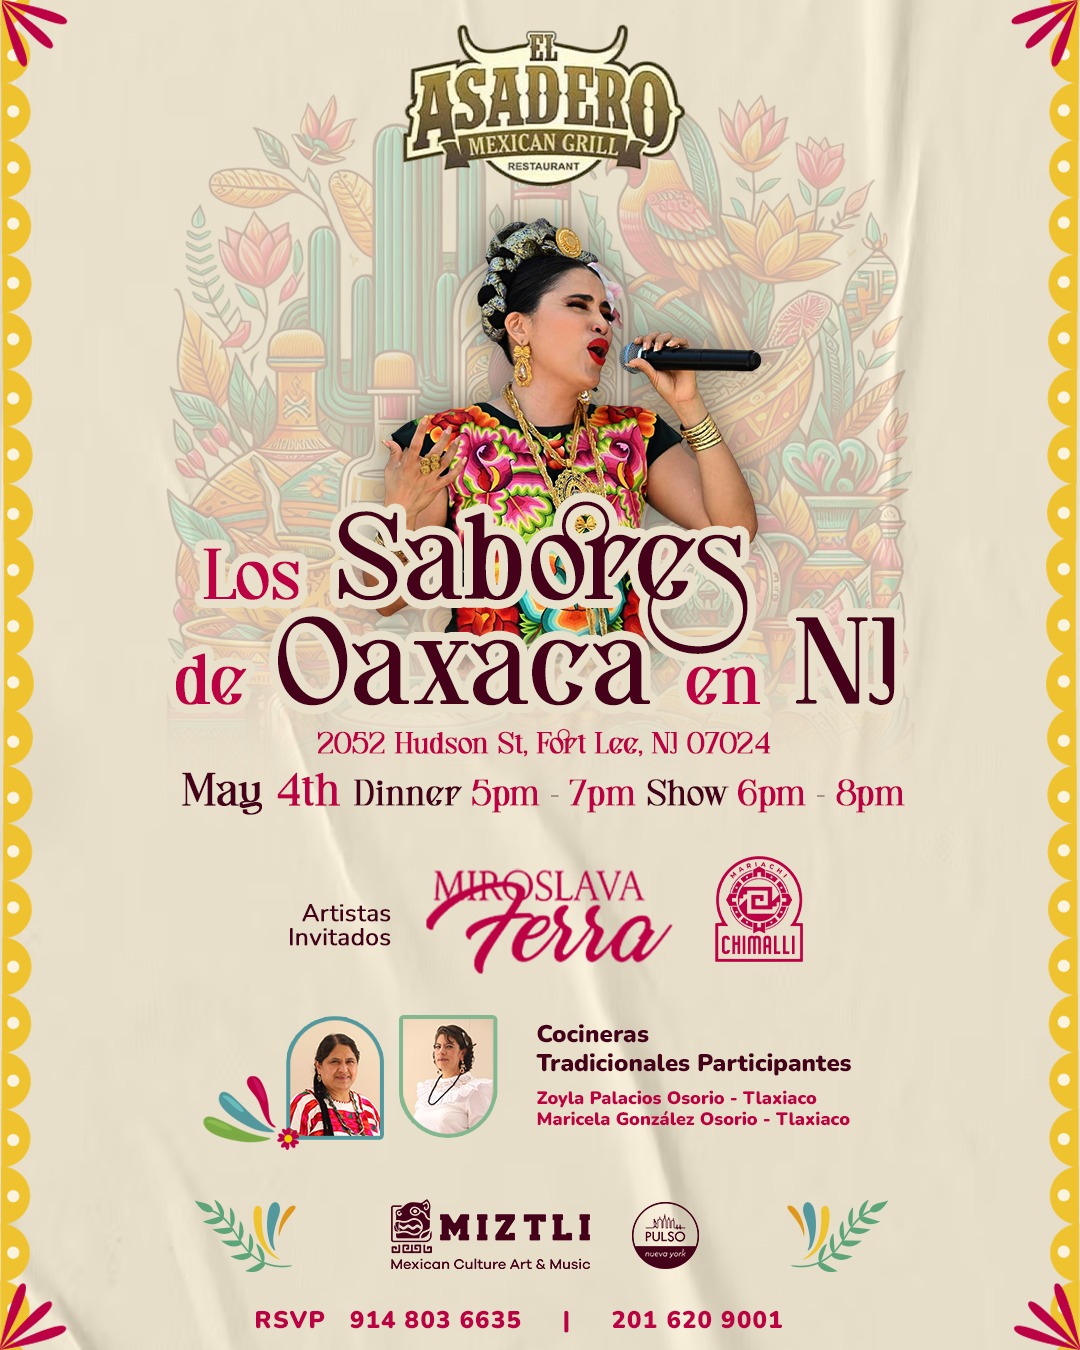 Los sabores de Oaxaca en NJ